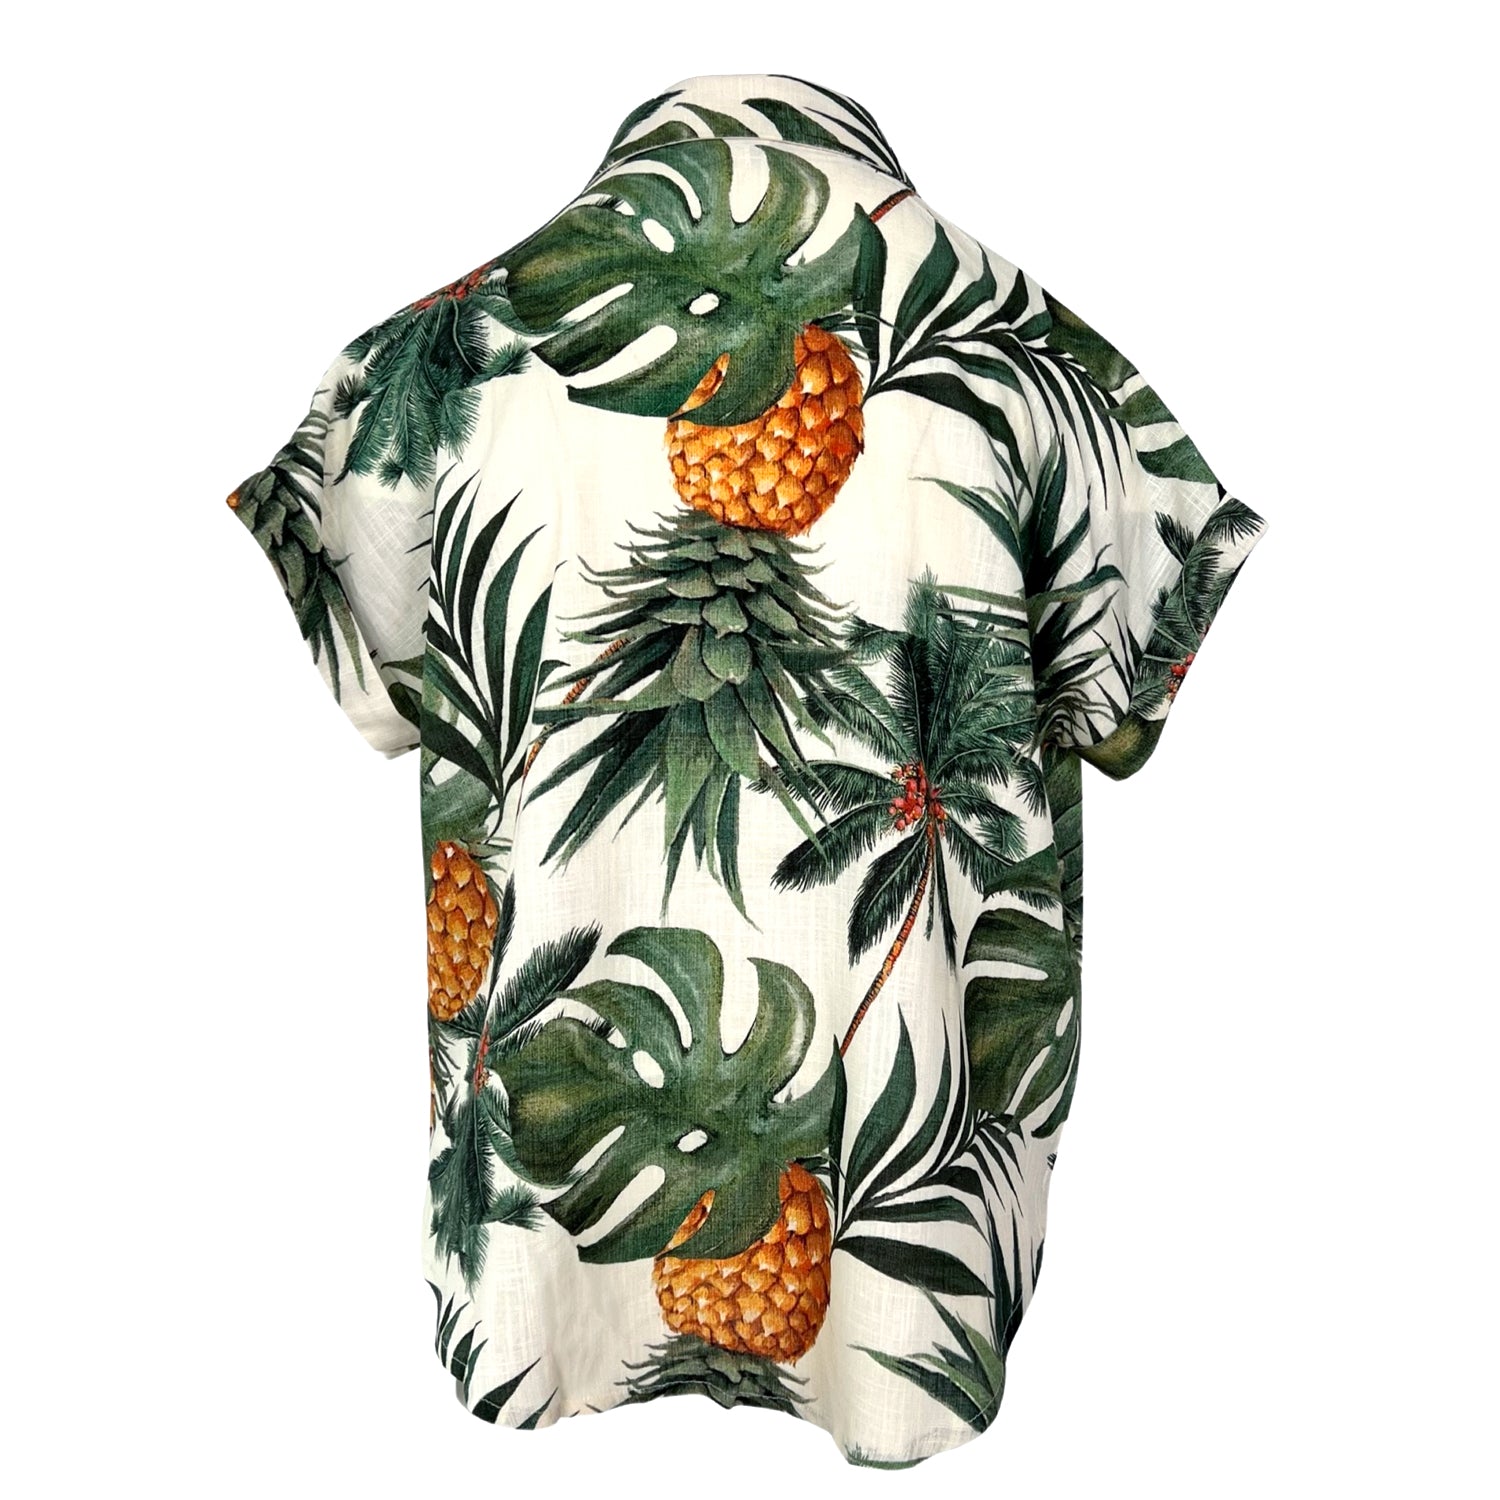 Short-Sleeved Linen Shirt - Leaves & Pineapple Print